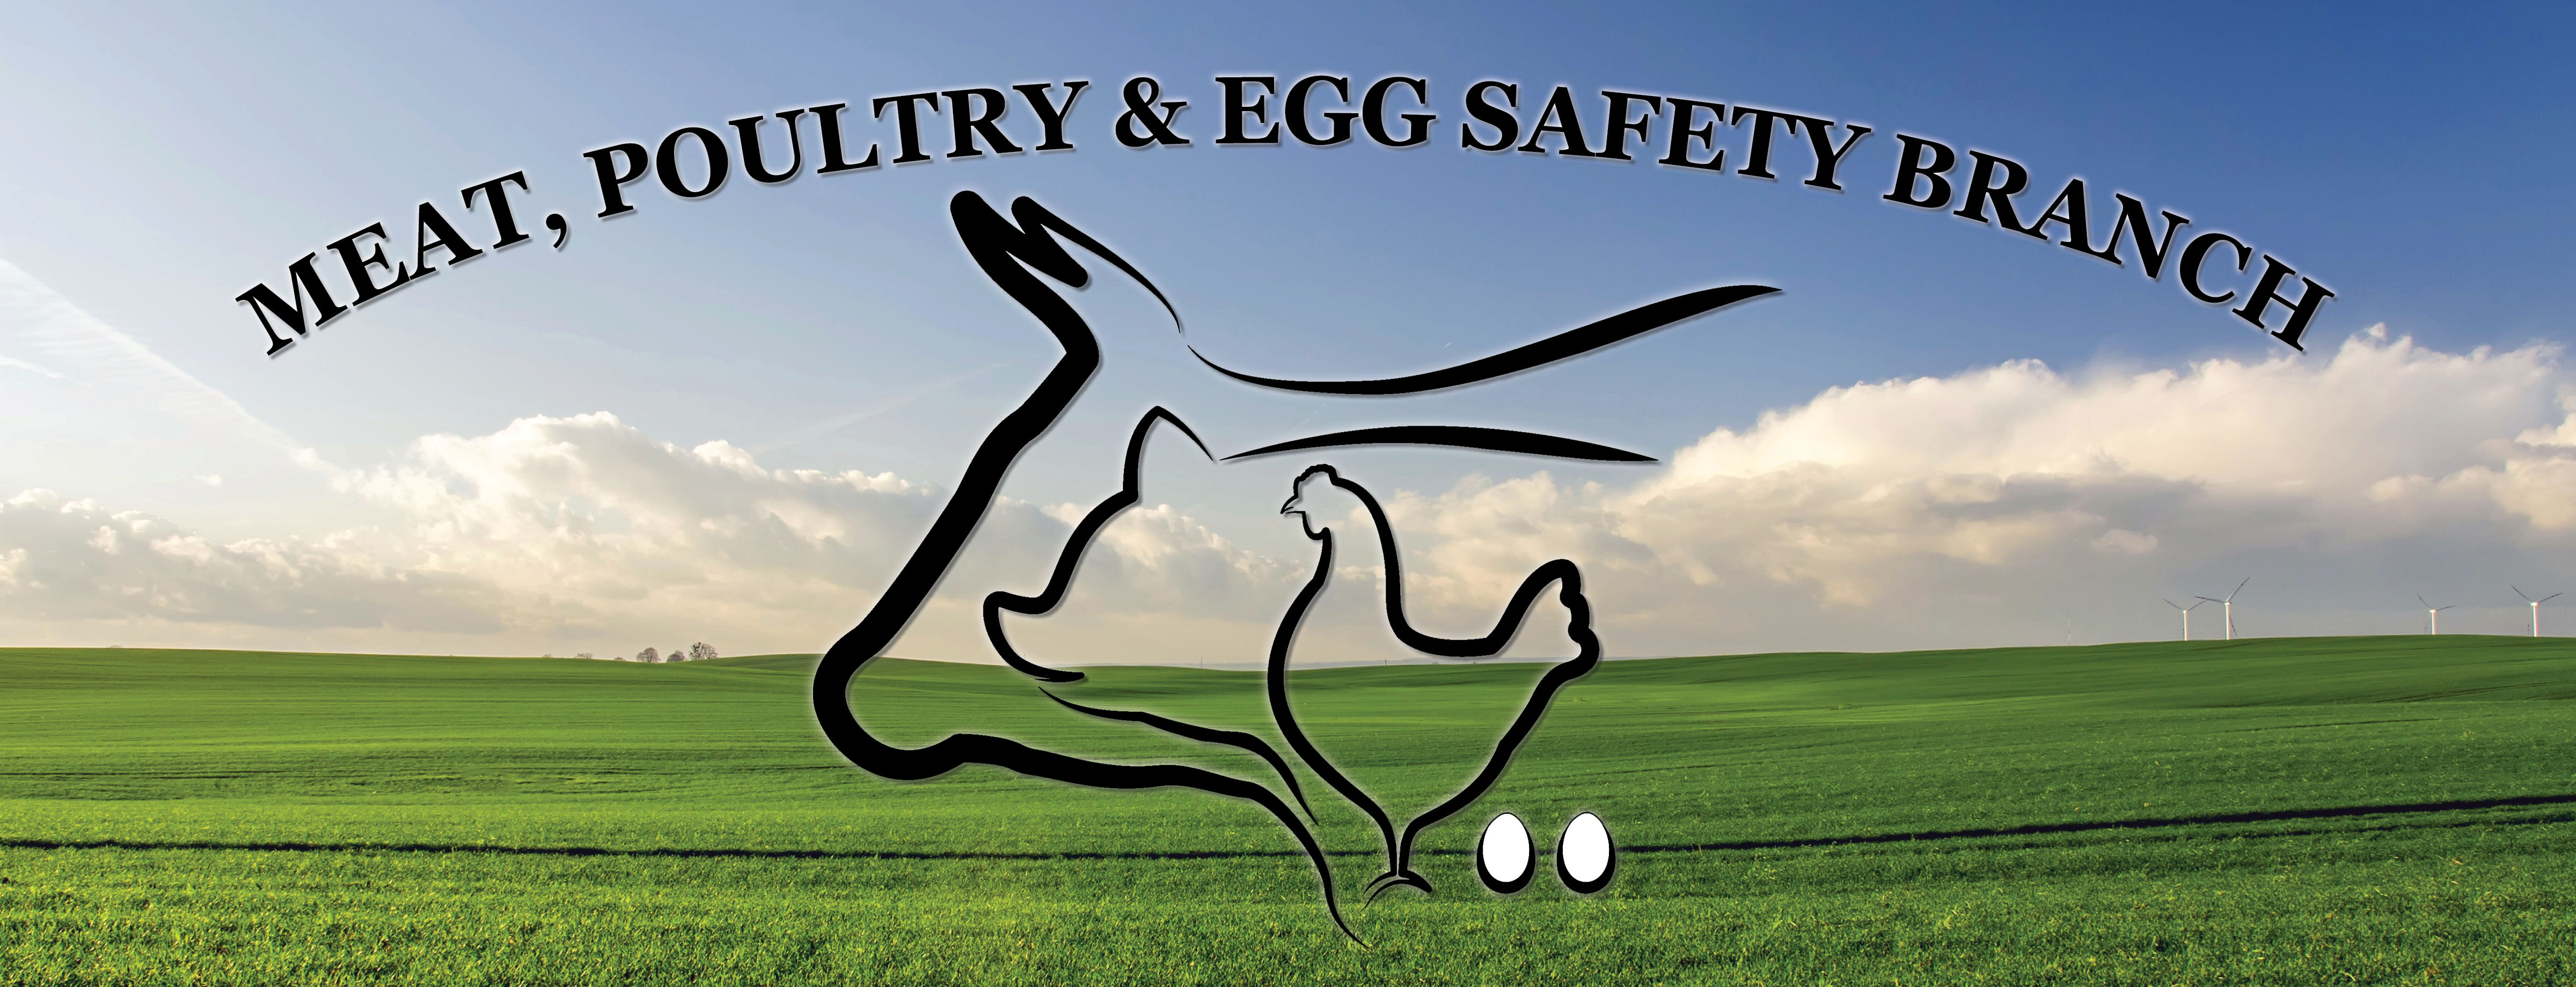 Meat, Poultry & Egg Safety Branch logo